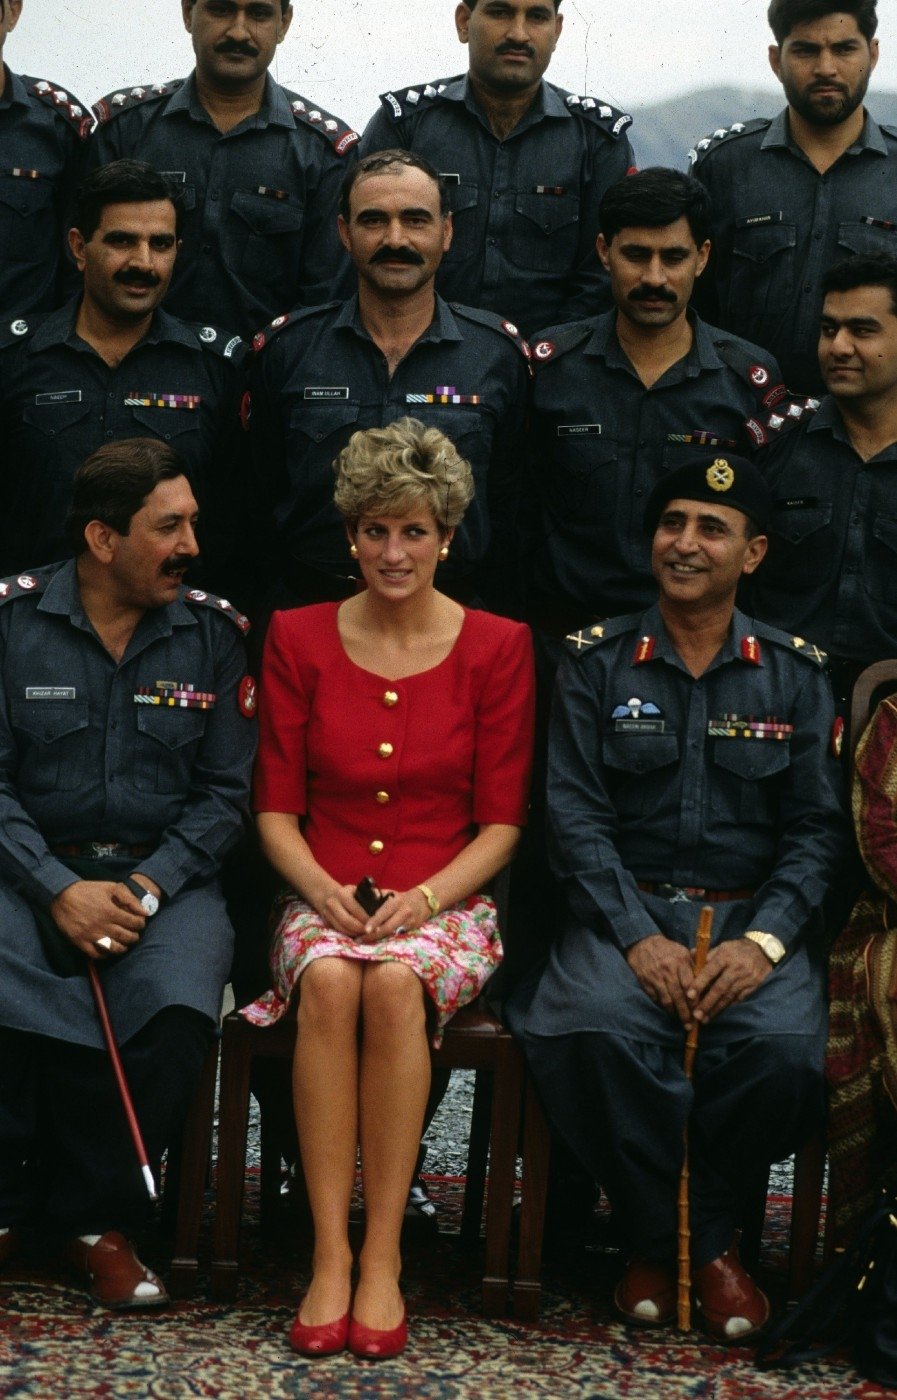 Diana na fotce s pákistánskými vojáky z září 1991